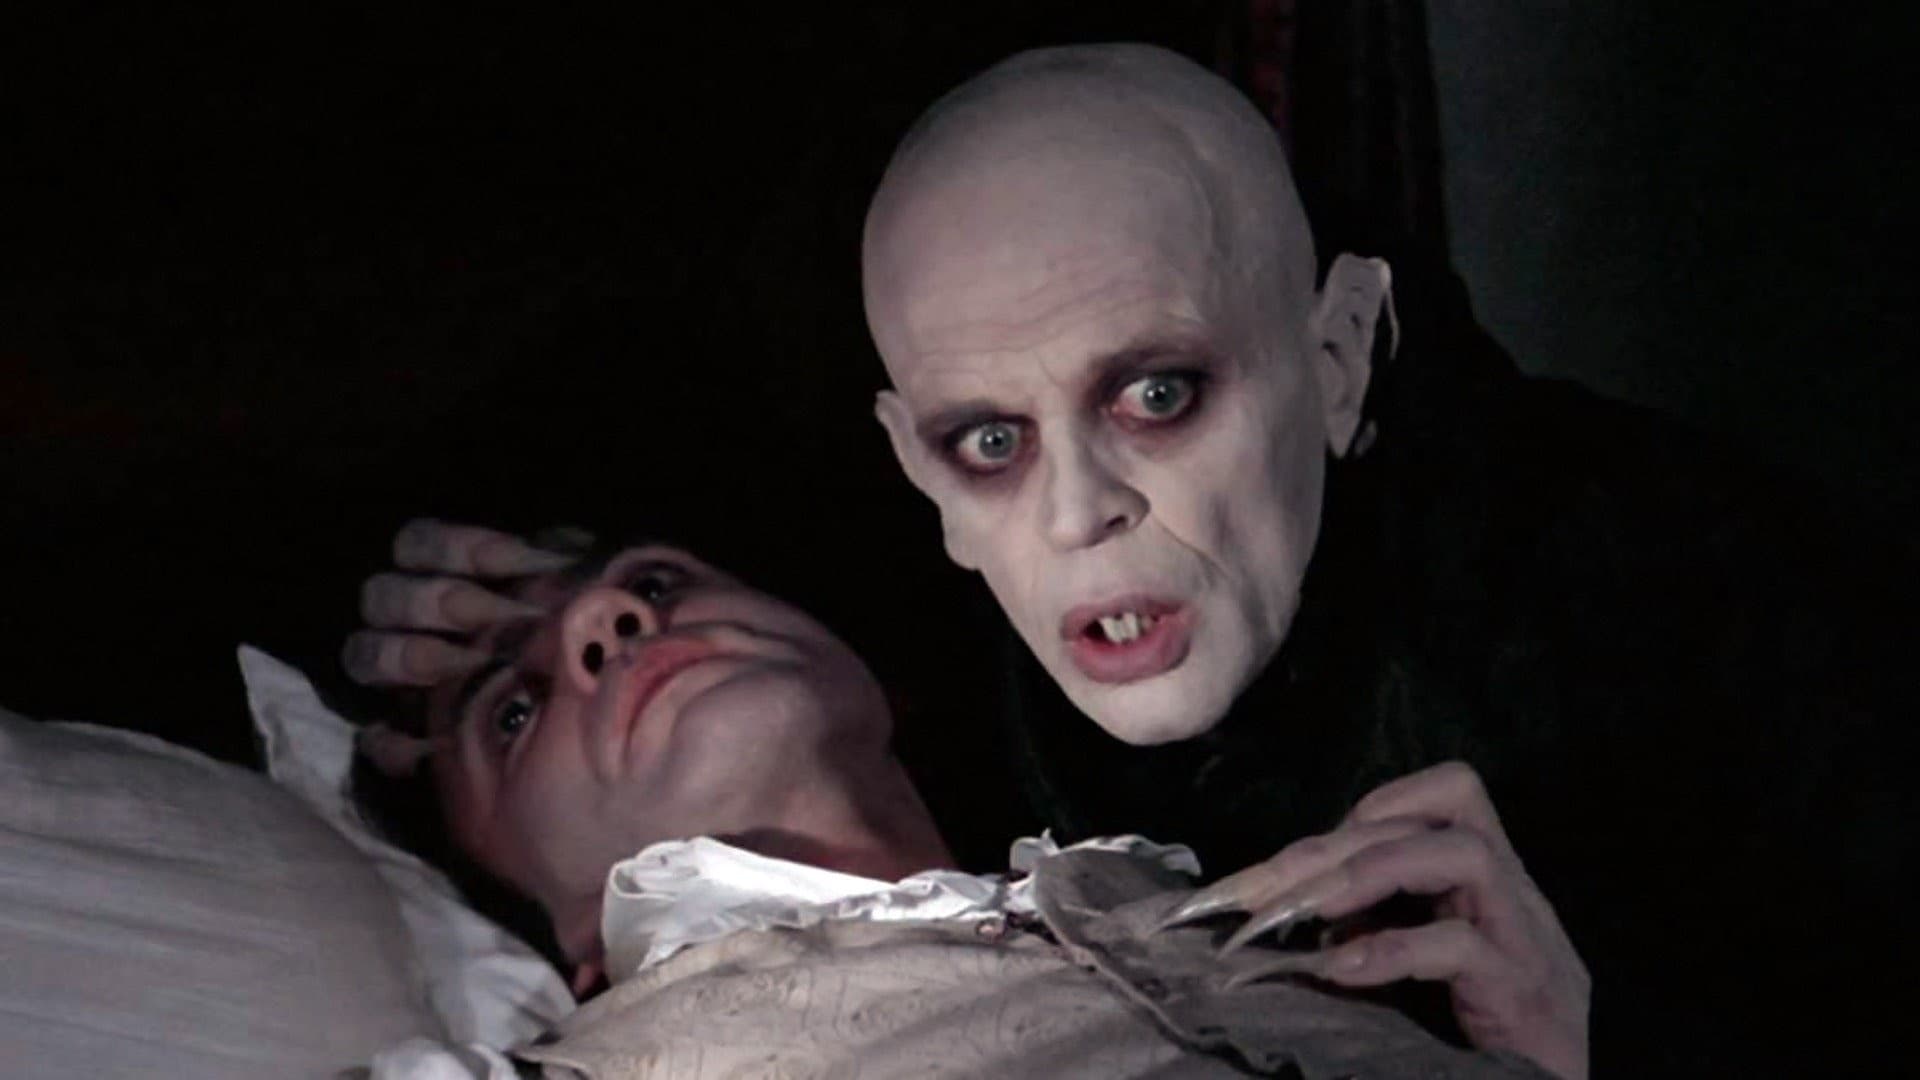 Nosferatu : Fantôme de la Nuit